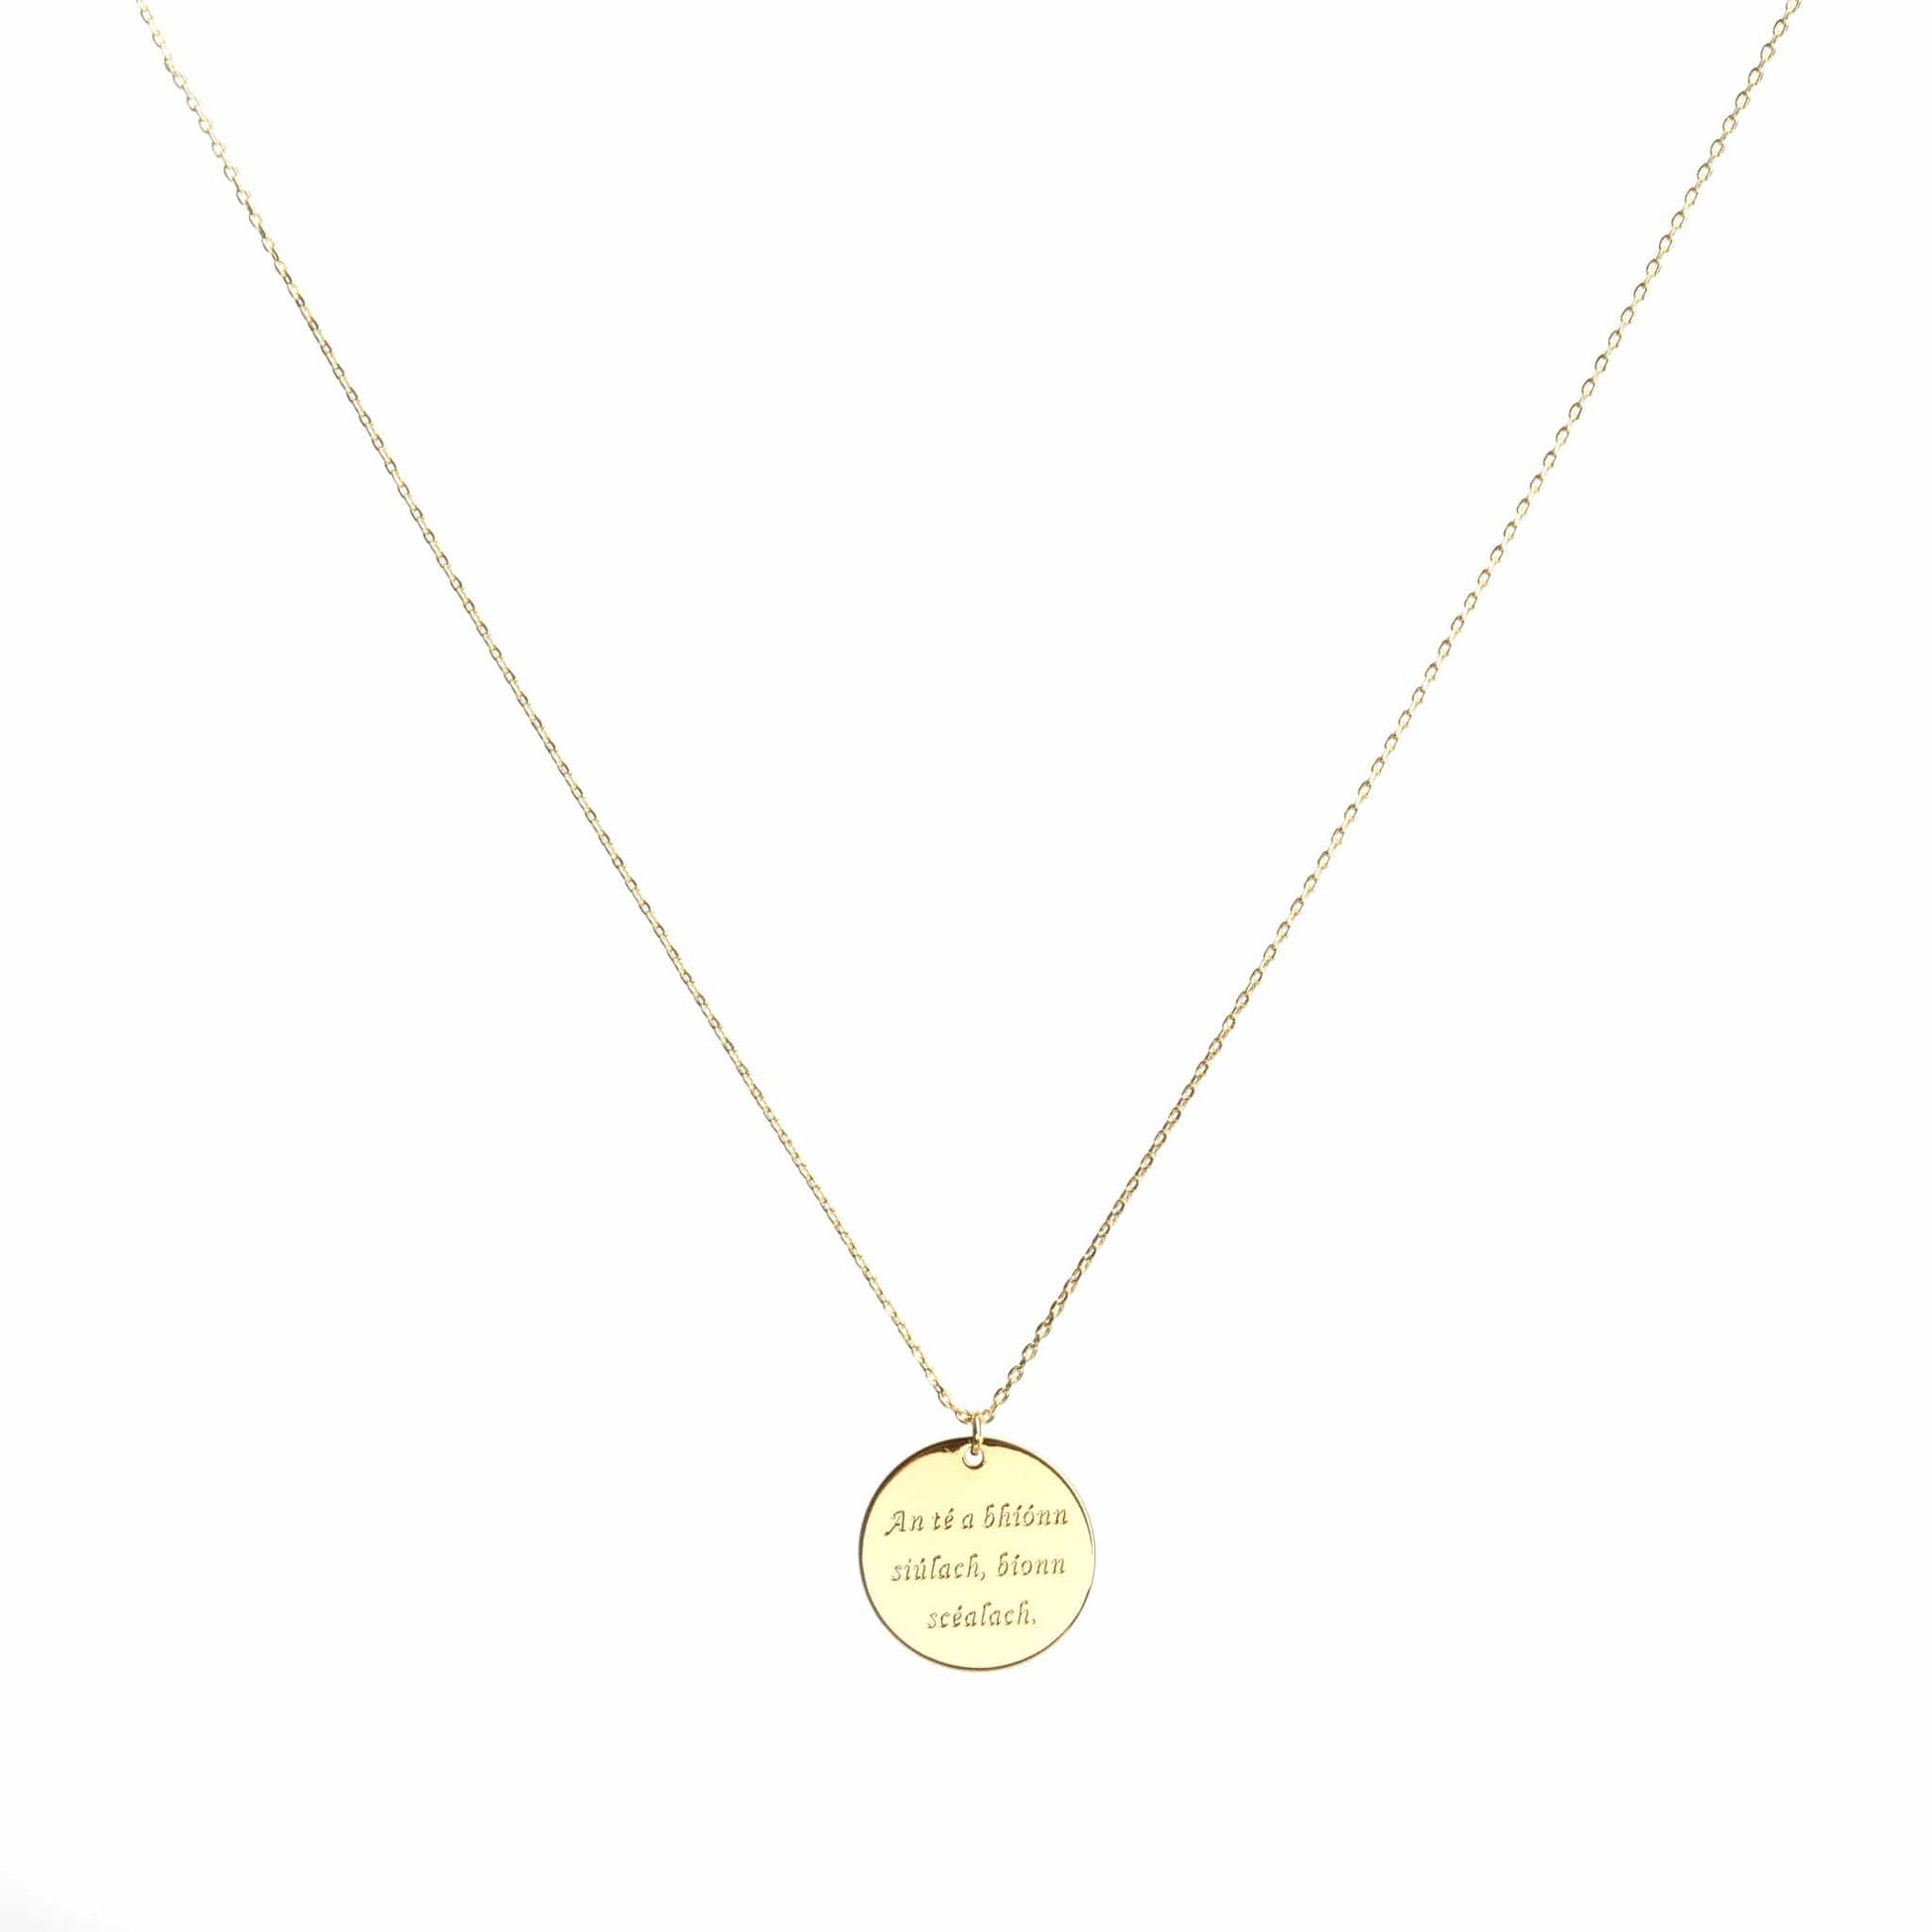 Irish quote pendant necklace in gold